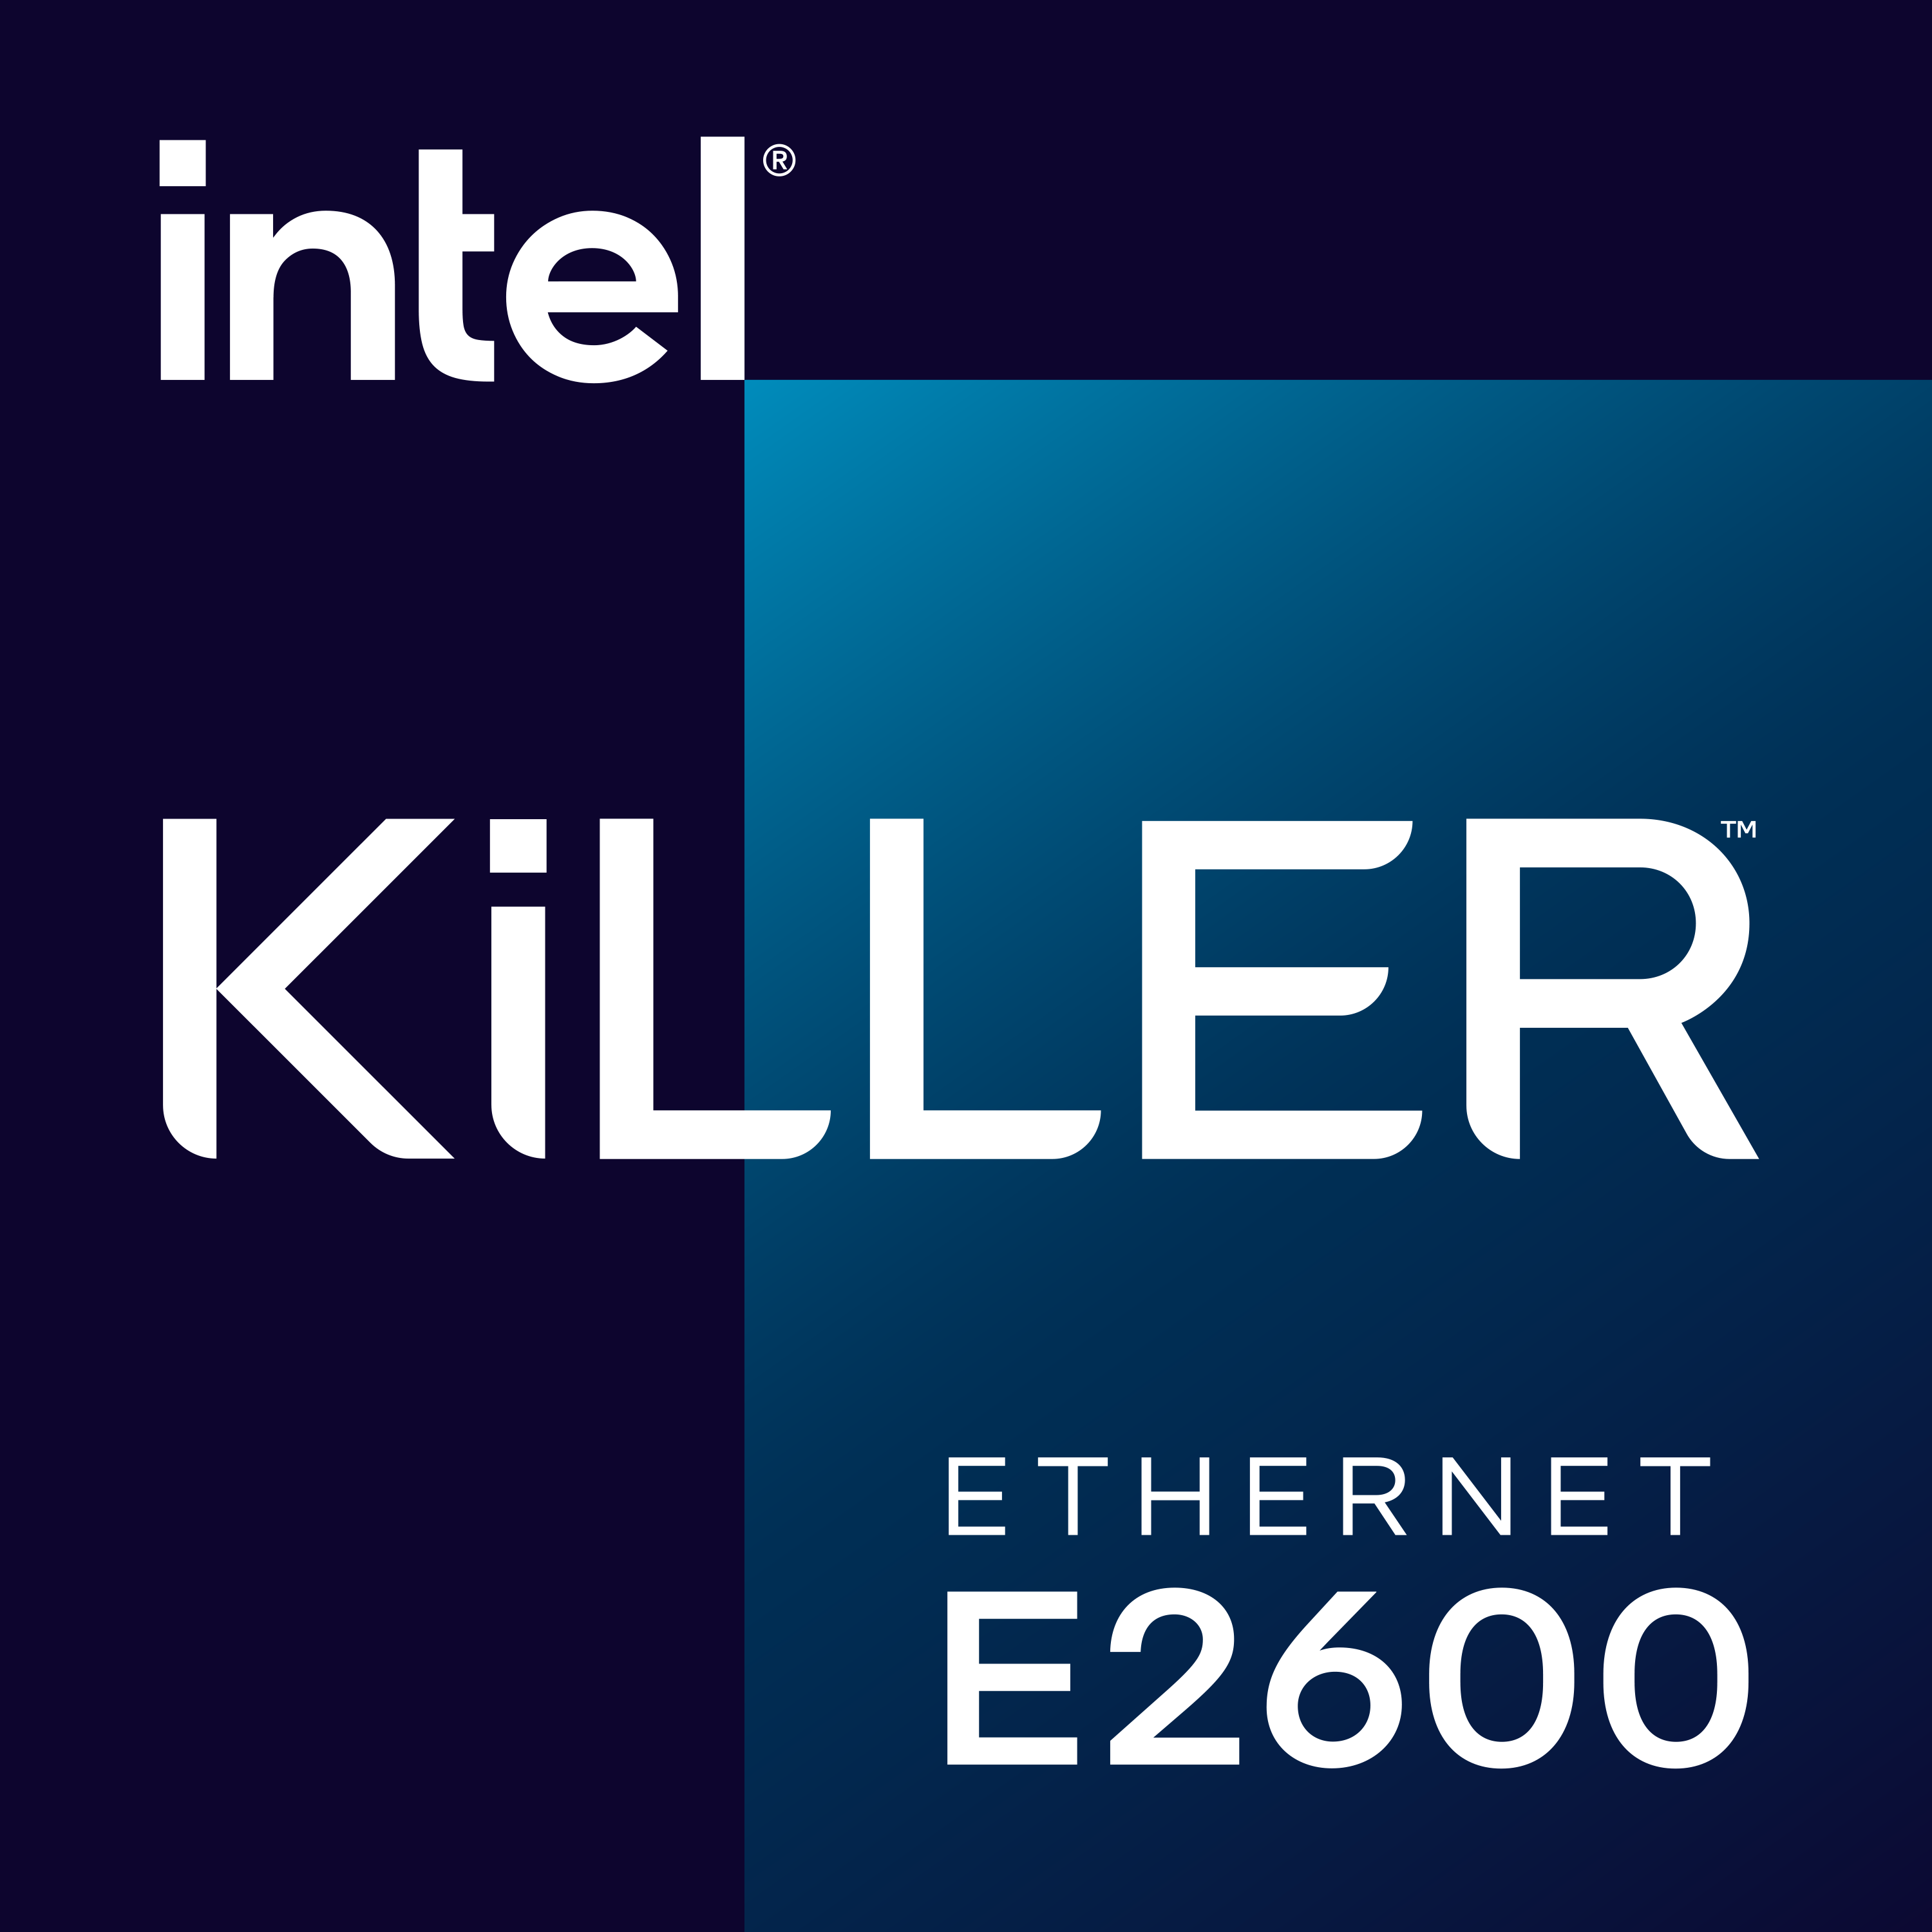 Intel Killer Ethernet E2600